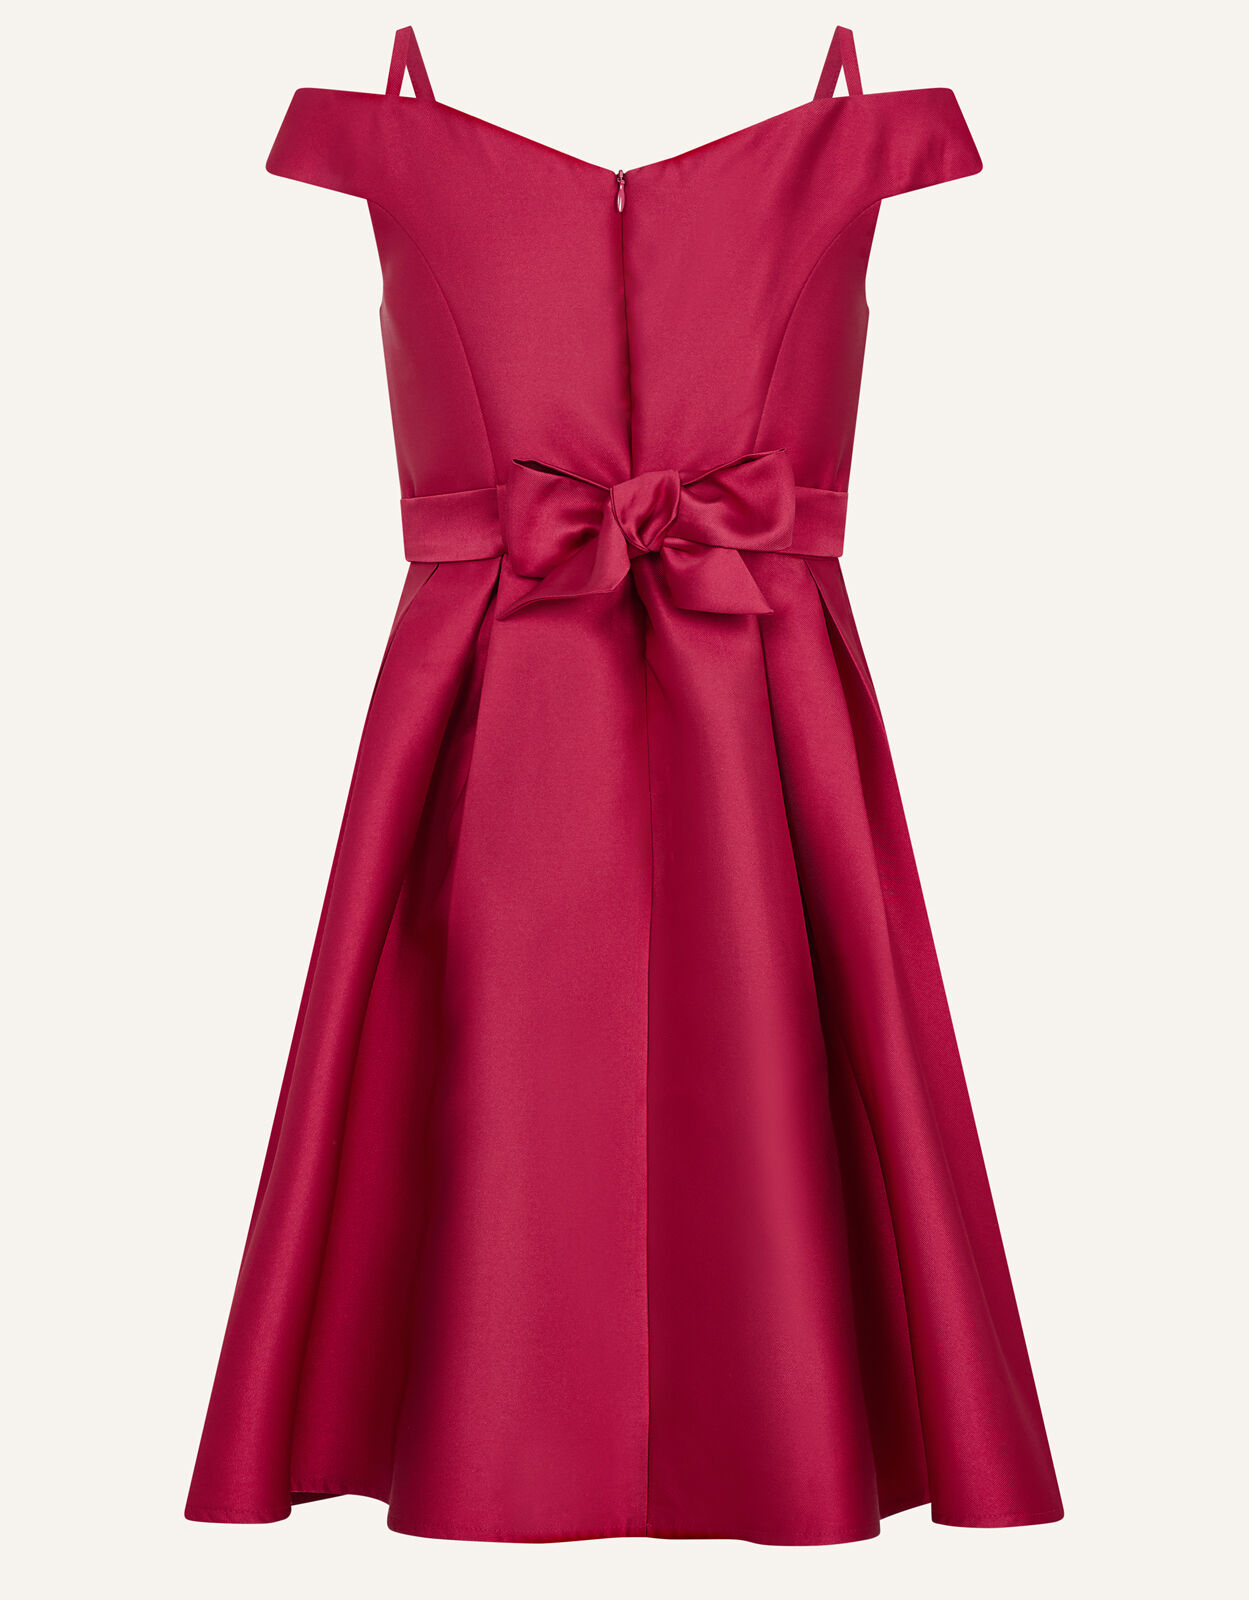 Bardot Duchess Twill Prom Dress Red ...